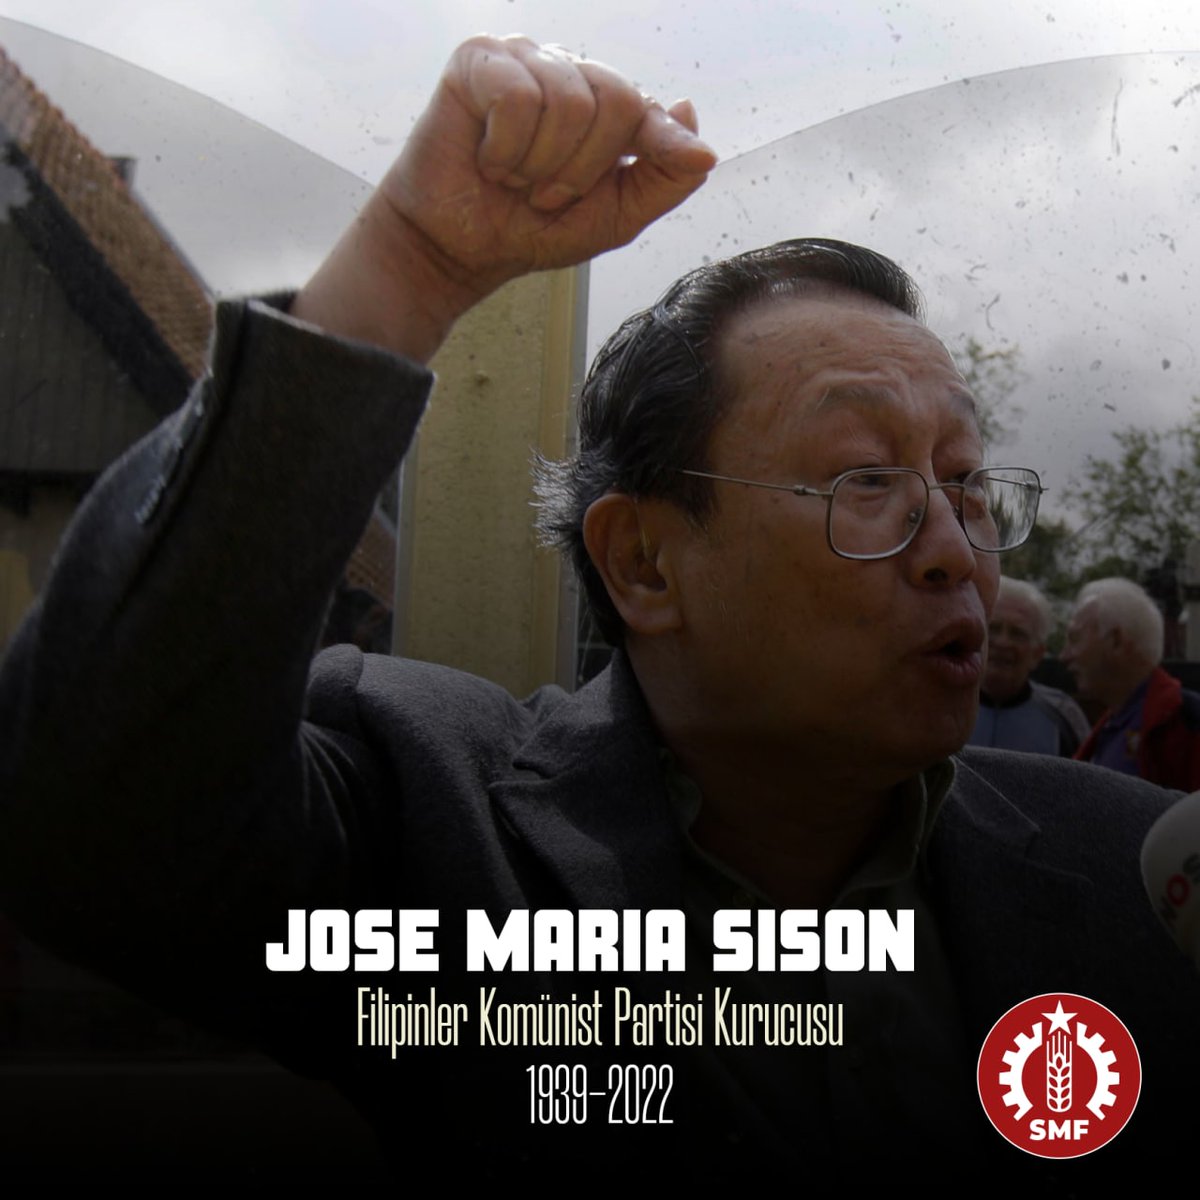 Enternasyonal proletaryanın komünist önderlerinden ve Filipinler Komünist Partisi kurucularından Jose Maria Sison Hollanda'da yaşamını yitirdi.

Dünya devrim mücadelesine katkıları asla unutulmayacak; her zaman saygıyla anılacaktır.

 #JoseMariaSison #KaJomaLives